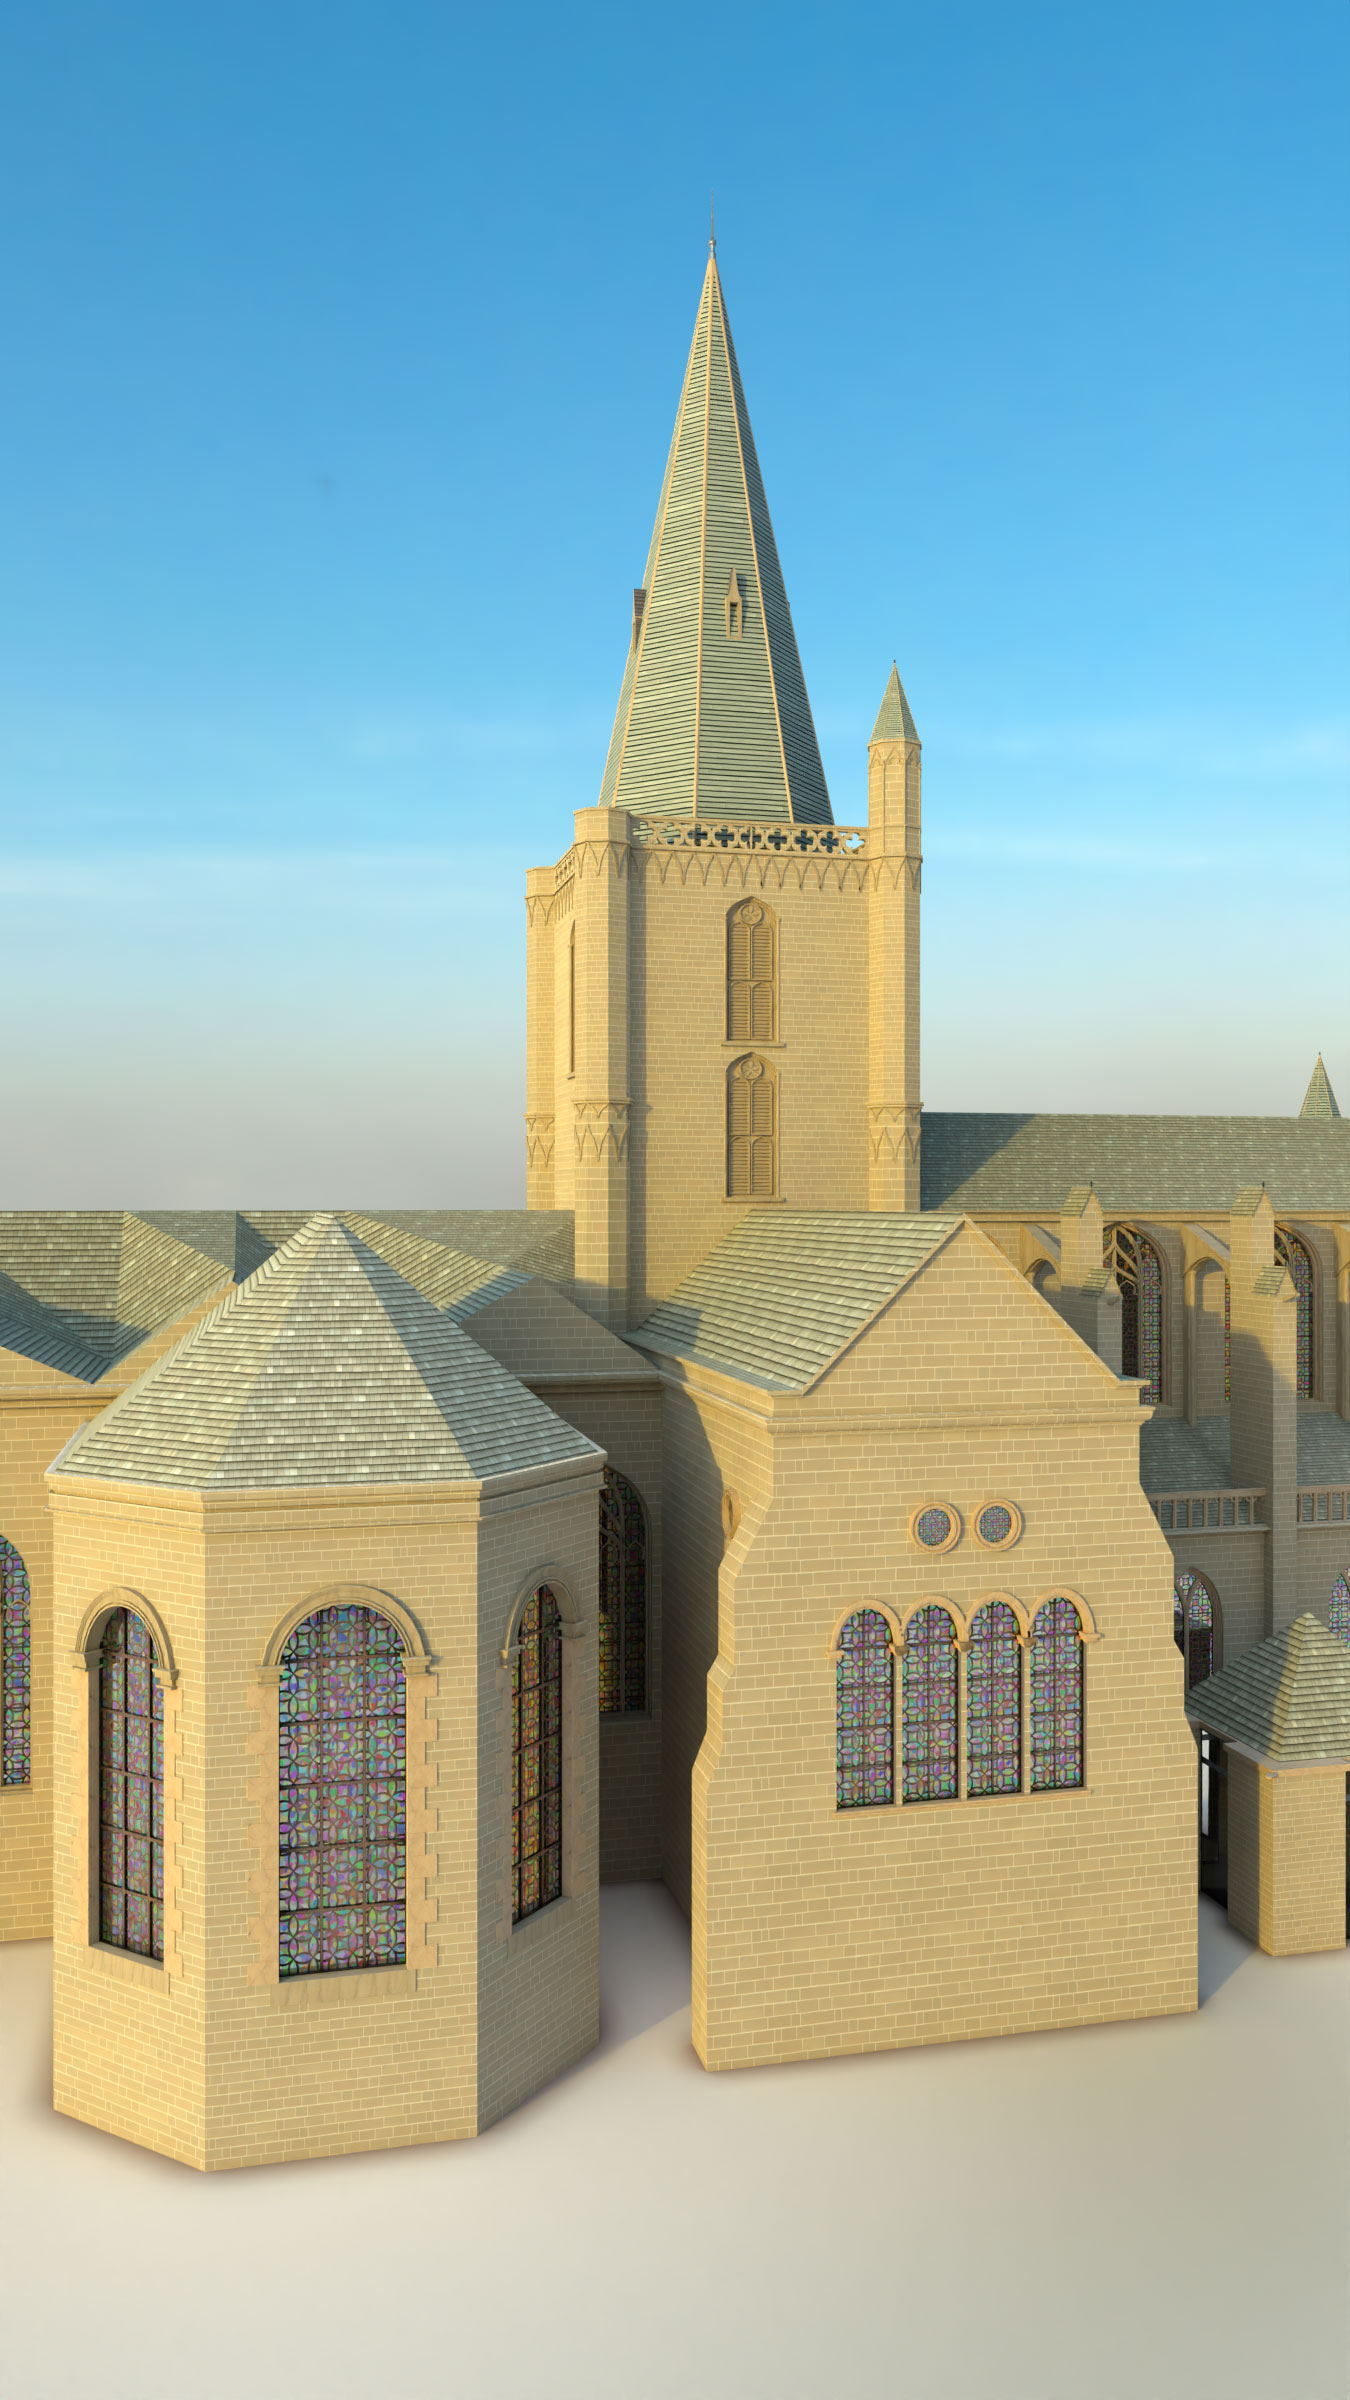 Rendus de la Cathédrale de Saint-Malo